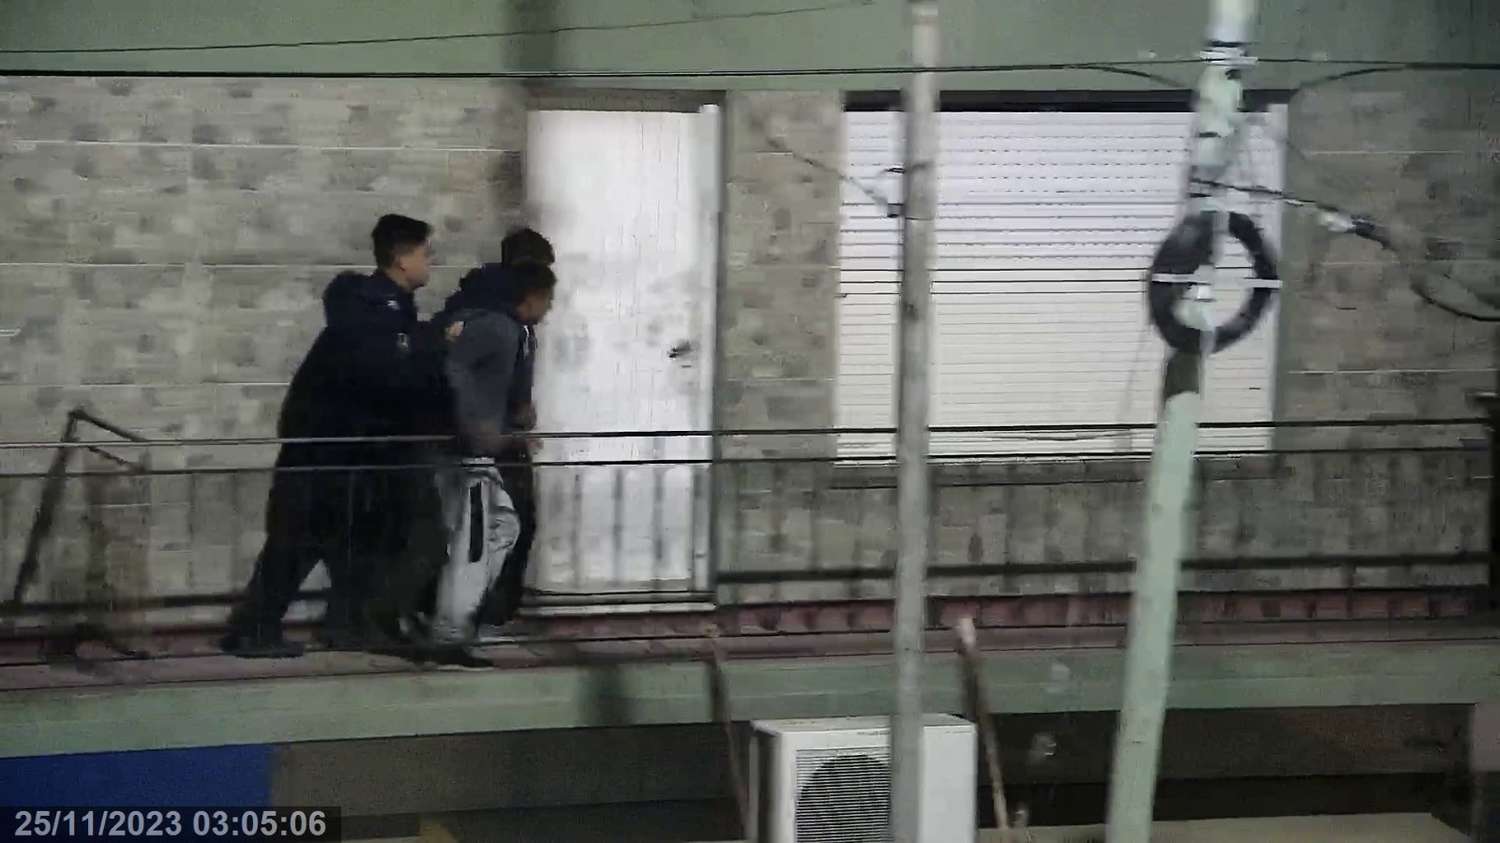 Escalaron a un balcón para robar pero los estaban mirando por las cámaras